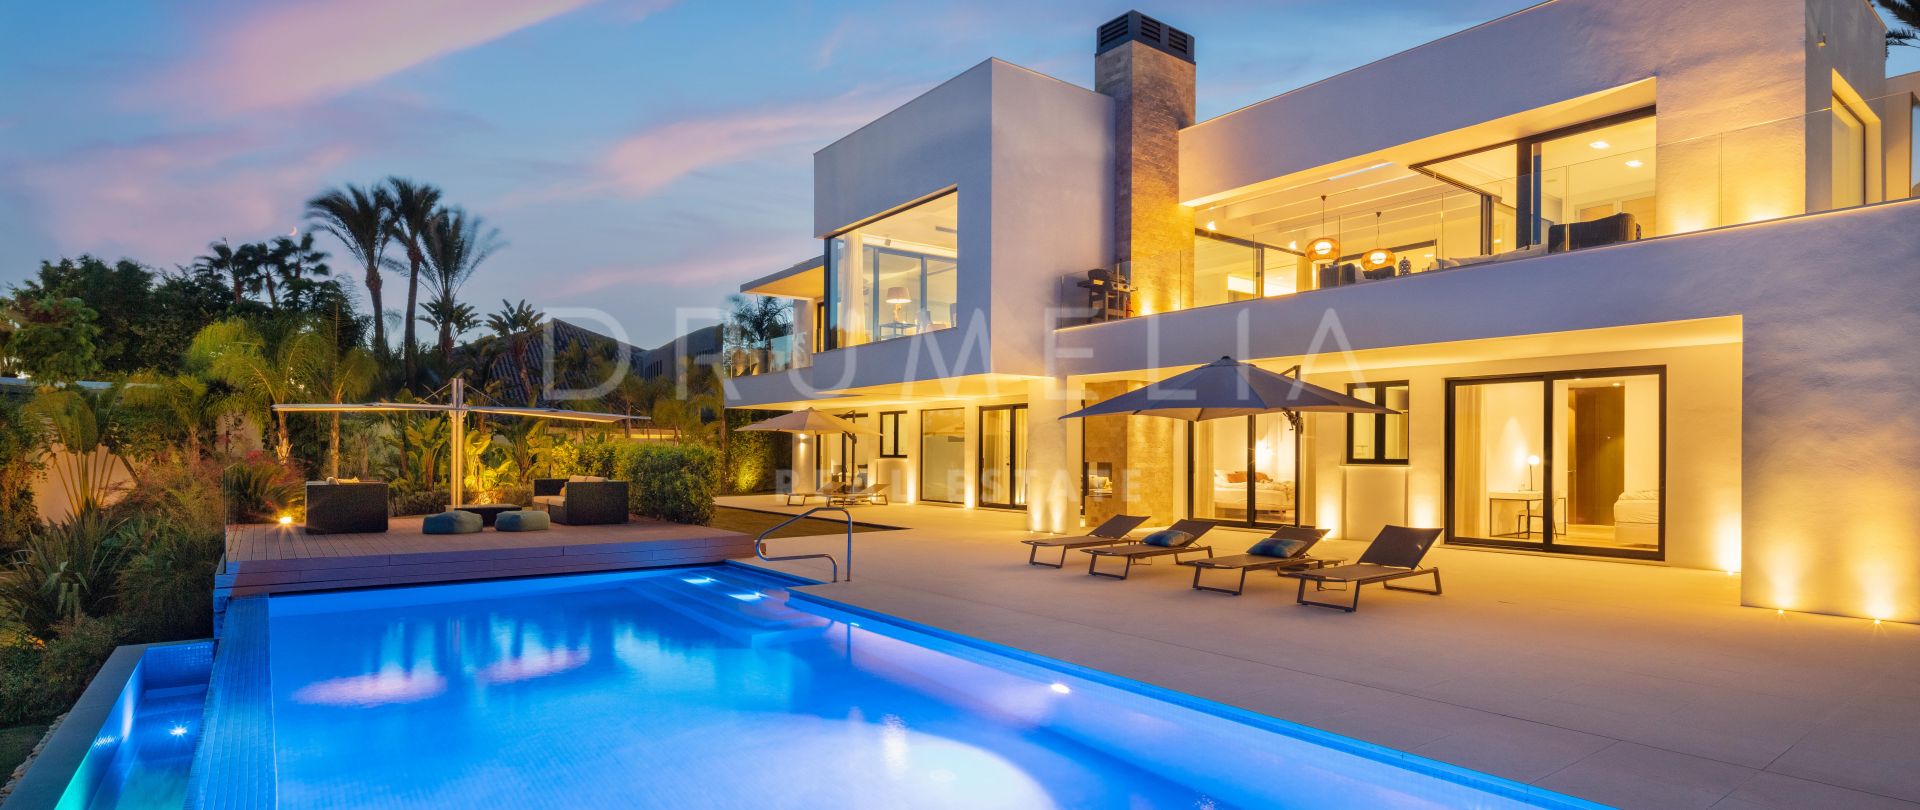 Cerquilla 31 - Beautiful contemporary villa with panoramic sea views in La Cerquilla, Nueva Andalucia, Marbella